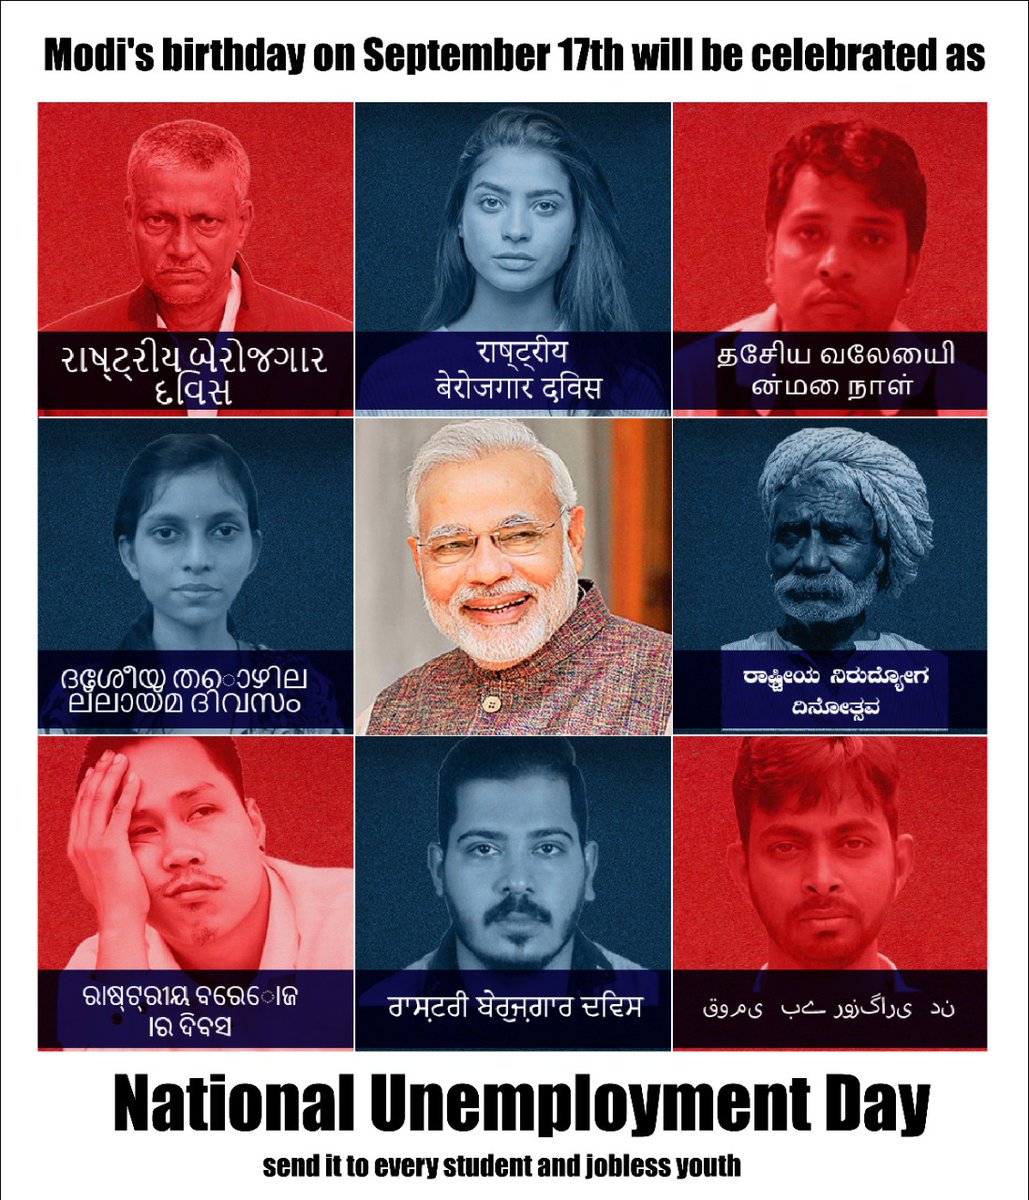 मित्रों ,

 मोदीजी के मास्टरस्ट्रोक के कारण डेढ़ करोड़ भारतीय बेरोजगार हैं

 कल मोदीजी के जन्मदिन पर, भारत के युवा  #राष्ट्रीय_बेरोजगार_दिवस बेरोजगारी दिवस मनाएंगे

 RT करके सभी बेरोज़गार मोदीजी को देश को 70 की दशक में पहुंचाने के लिए बधाई दें
#पनौती
#RozgaarDo
#unemploymentday